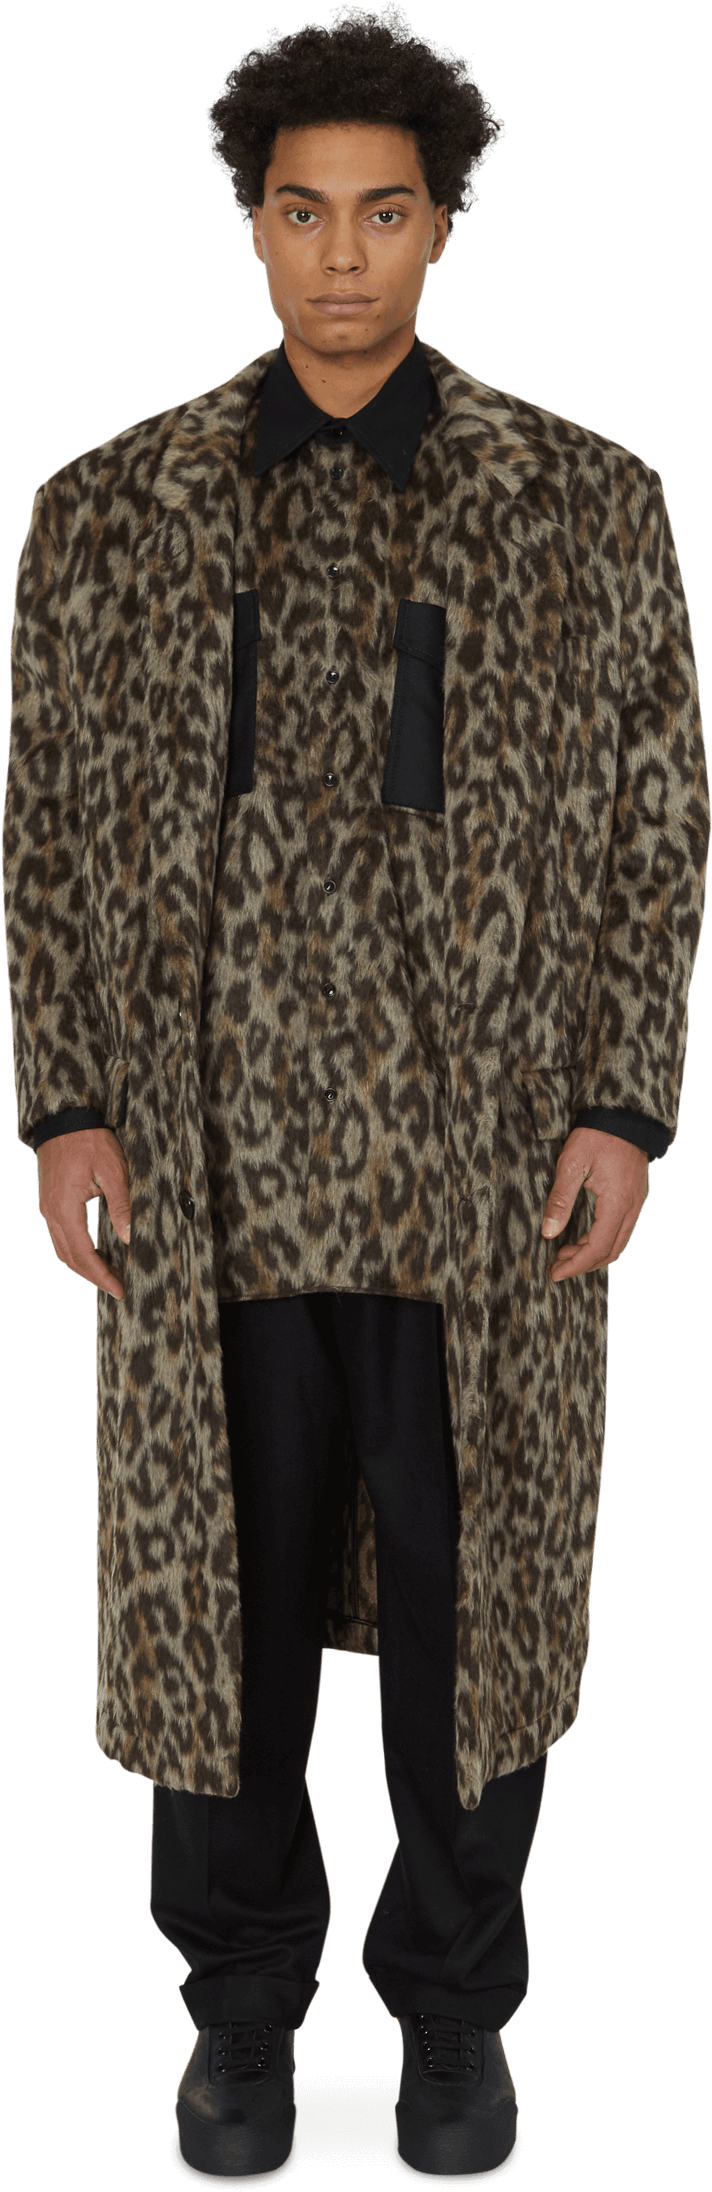 Fashion Model Leopard Print Coat PNG